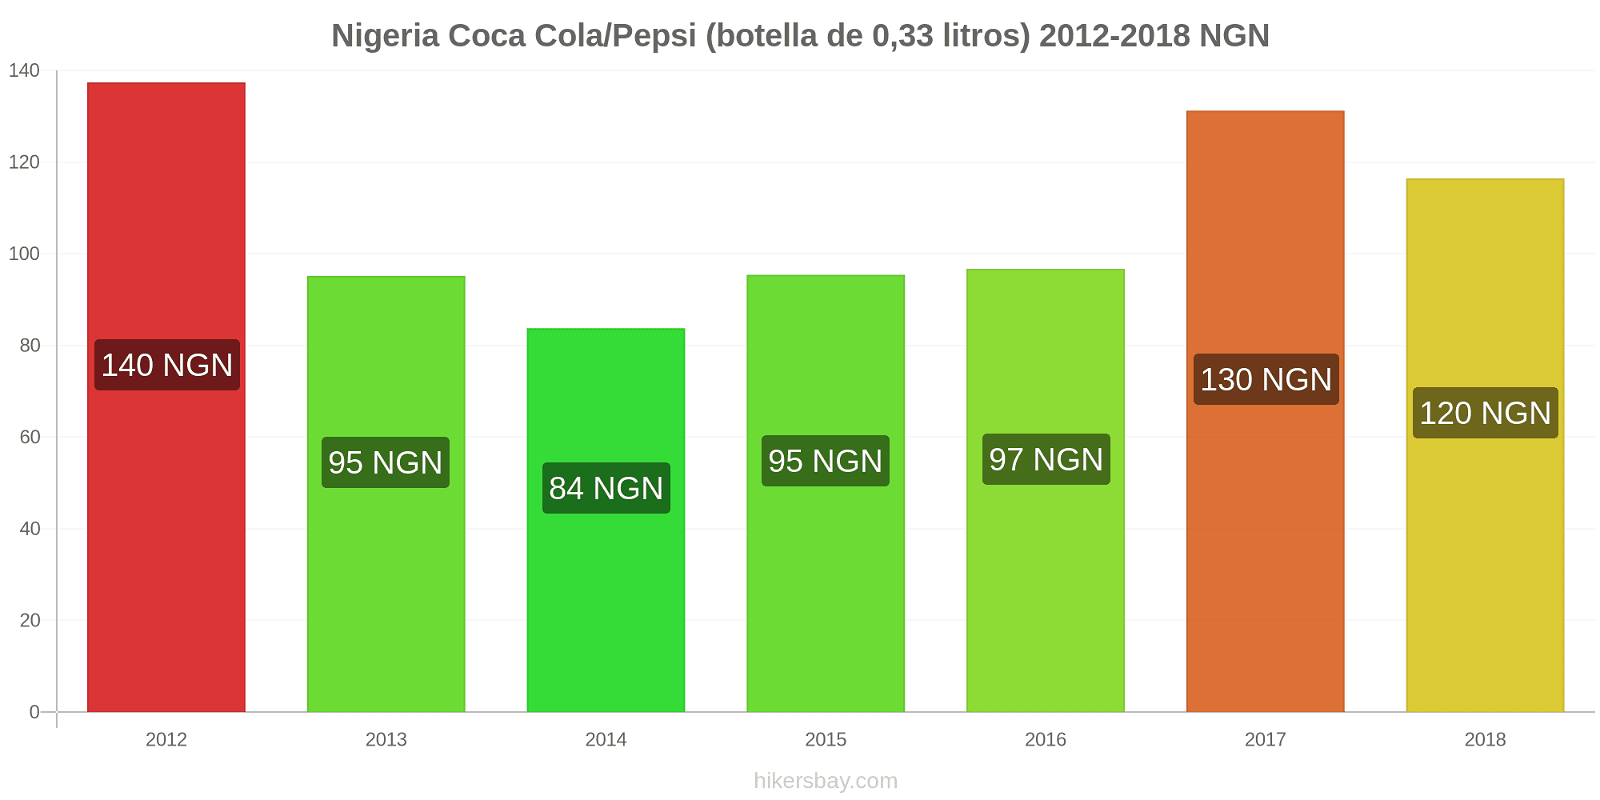 Nigeria cambios de precios Coca-Cola/Pepsi (botella de 0.33 litros) hikersbay.com